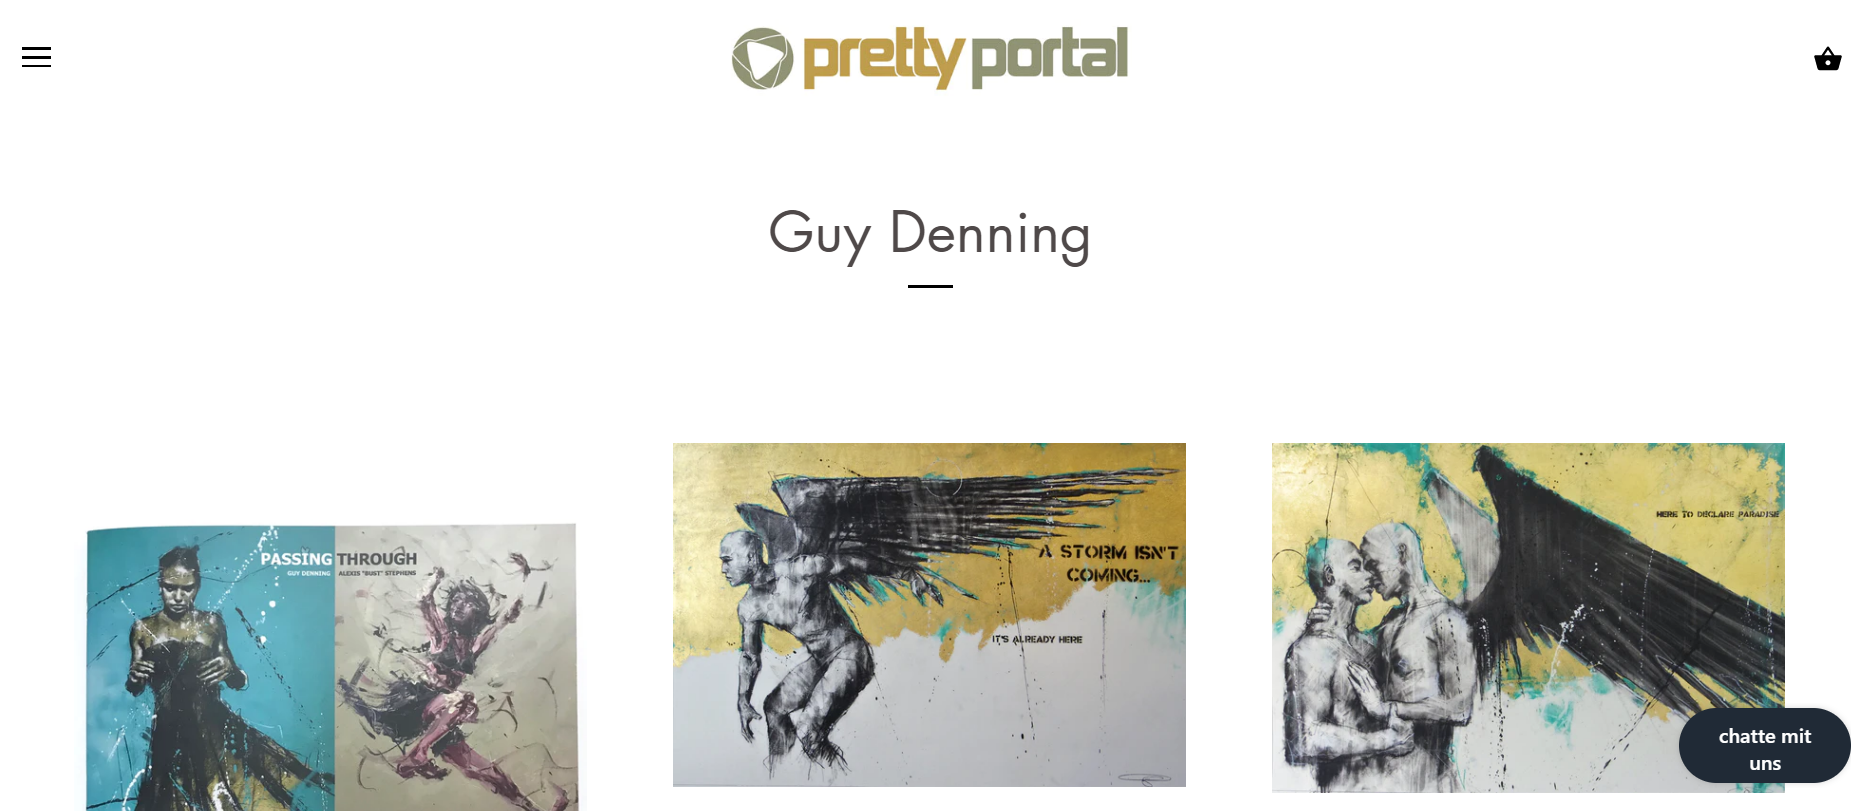 Der Shopify-Store von Pretty Portal. In seinem Shop kann Klaus Kunst online verkaufen.  